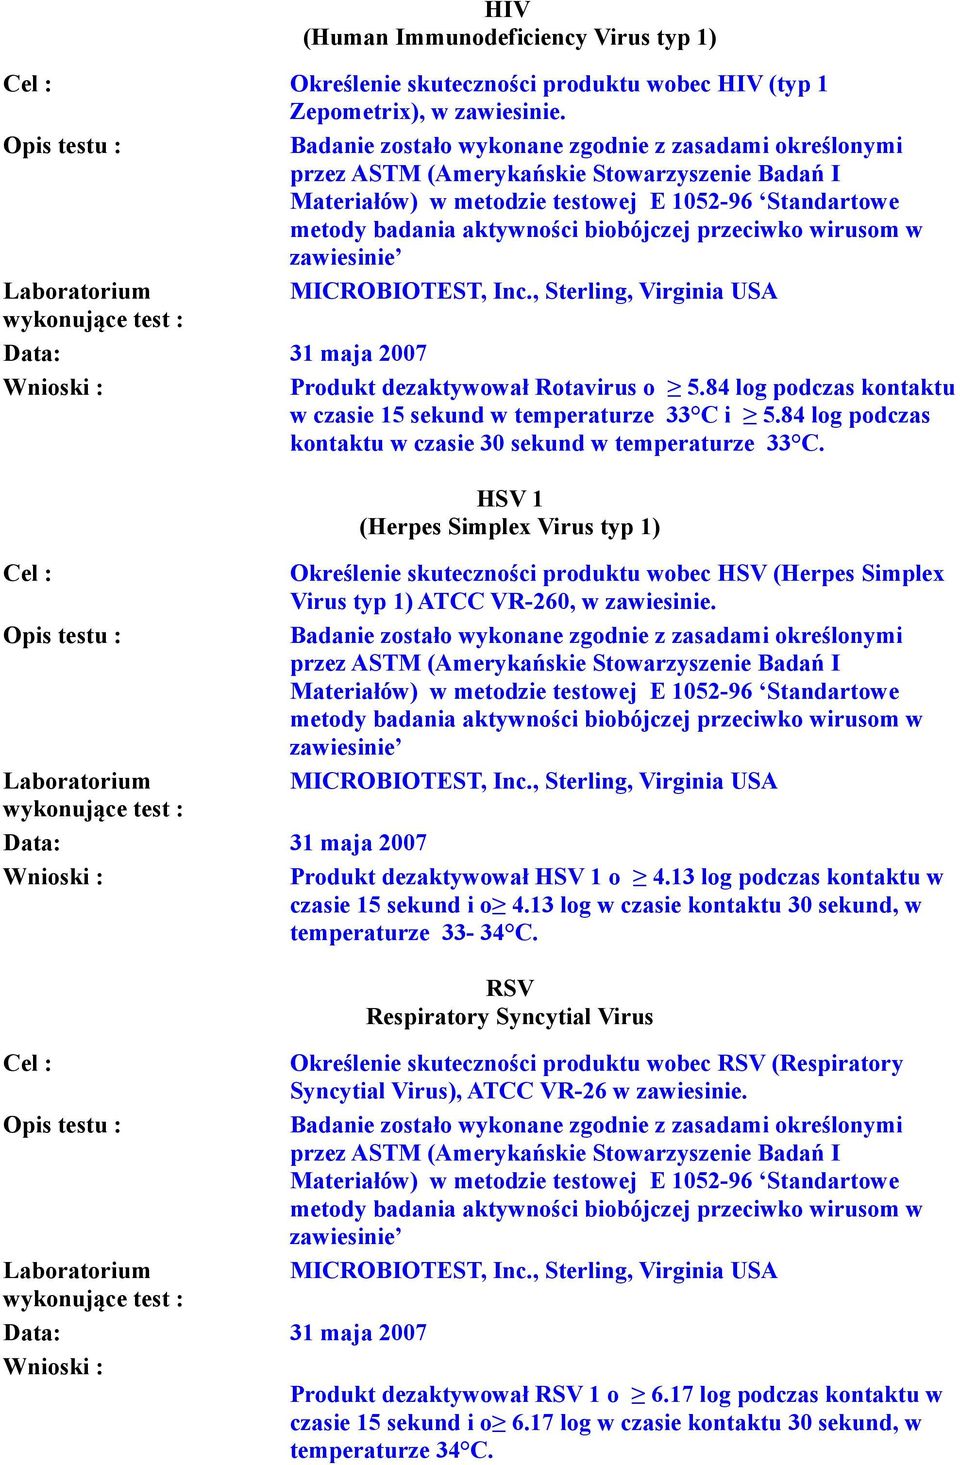 HSV 1 (Herpes Simplex Virus typ 1) Określenie skuteczności produktu wobec HSV (Herpes Simplex Virus typ 1) ATCC VR-260, w zawiesinie. Data: 31 maja 2007 Produkt dezaktywował HSV 1 o 4.